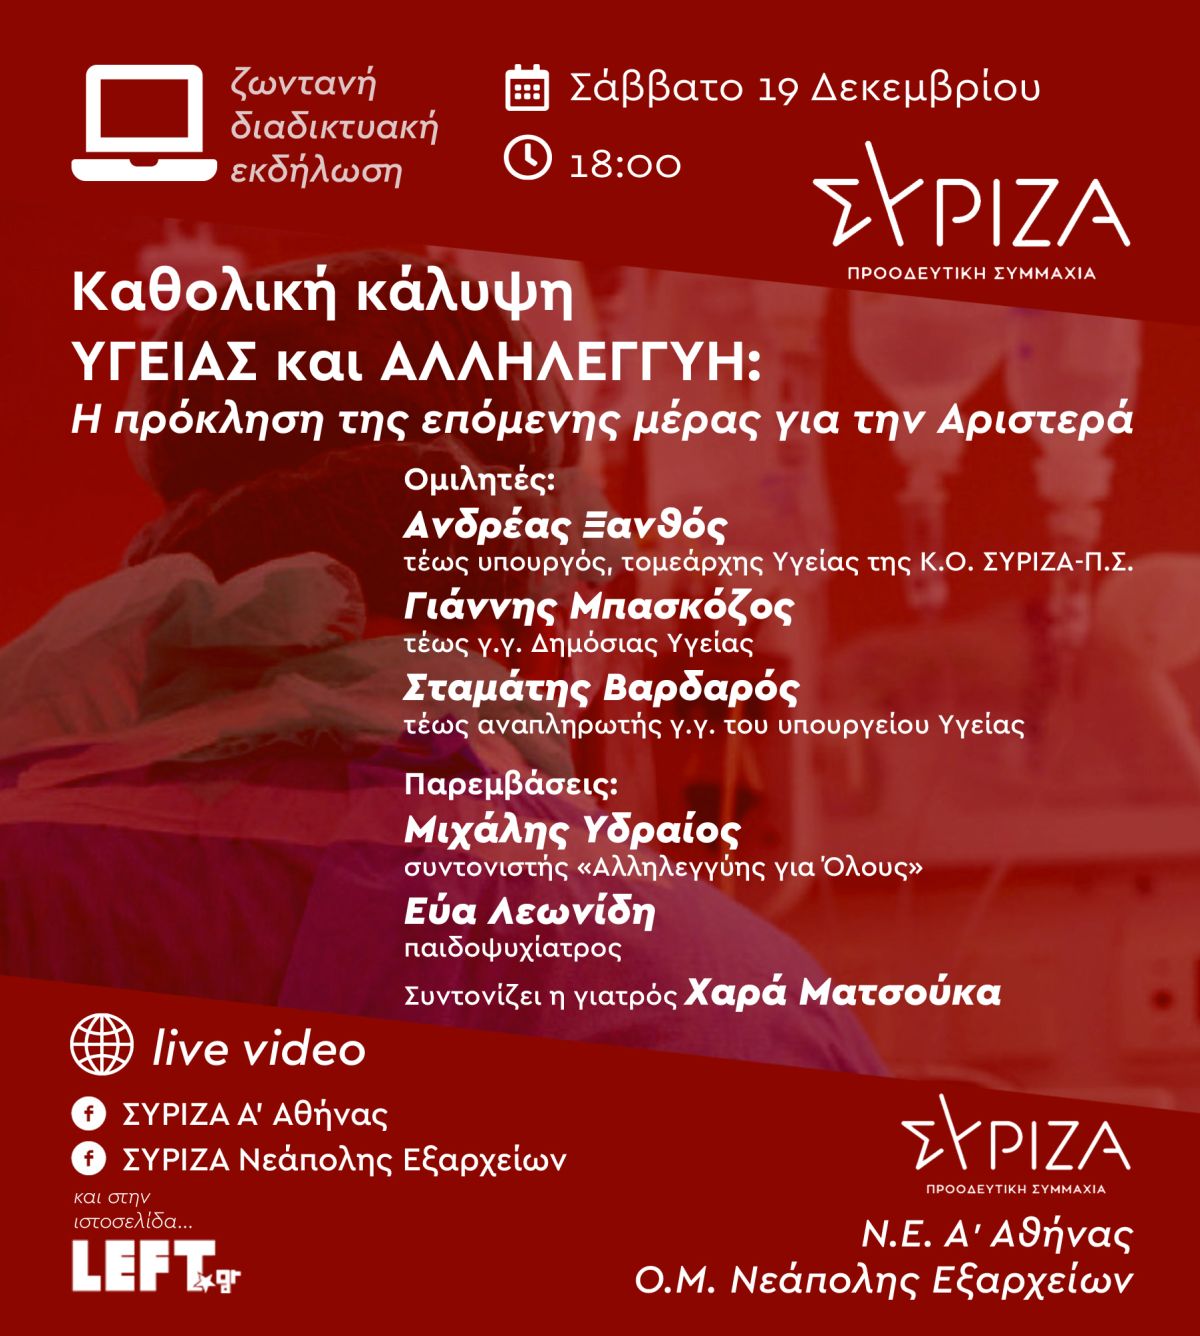 Διαδικτυακή εκδήλωση της Ο.Μ. Νεάπολης Εξαρχείων και της Ν.Ε. Α' Αθήνας του ΣΥΡΙΖΑ - Προοδευτική Συμμαχία για την καθολική κάλυψη υγείας και την αλληλεγγύη